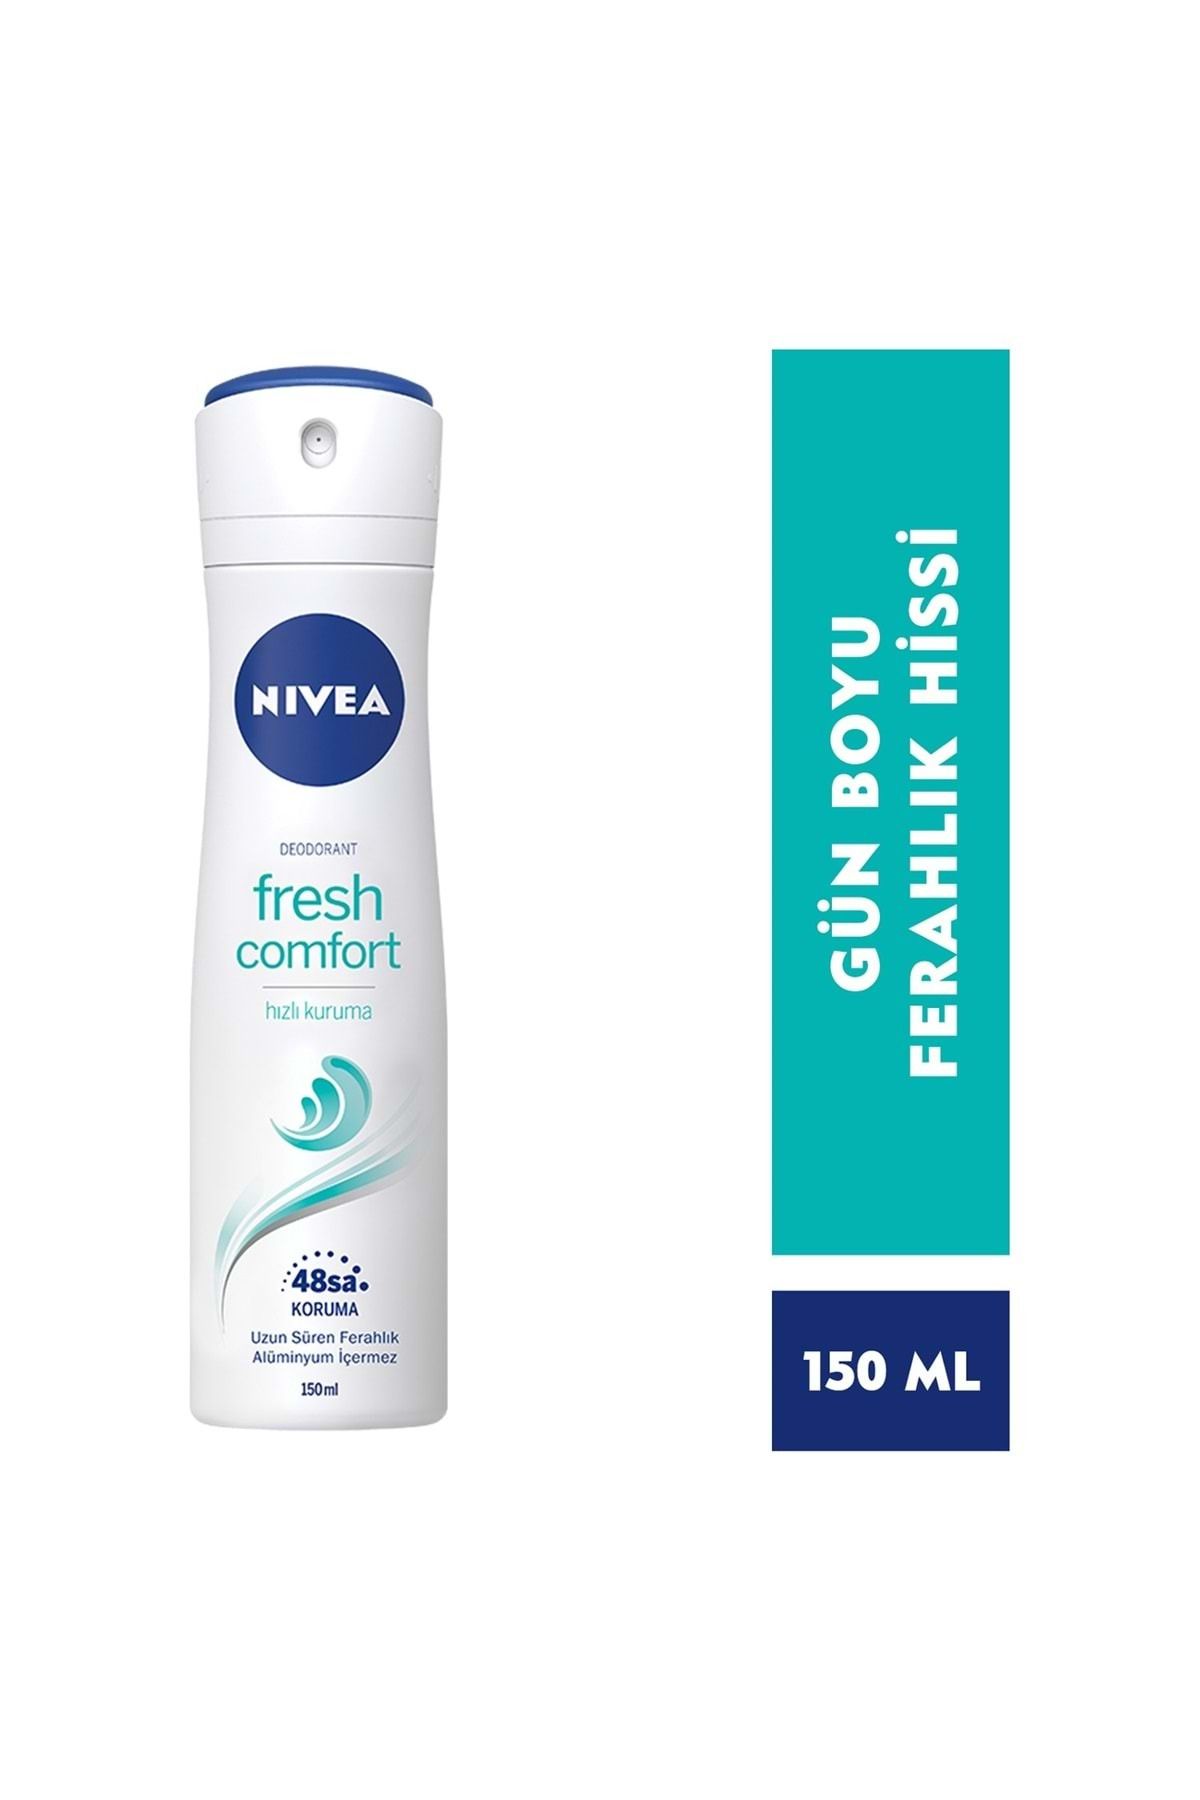 NIVEA Kadın Sprey Deodorant Fresh Comfort,48 Saat Deodorant Koruması,150ml